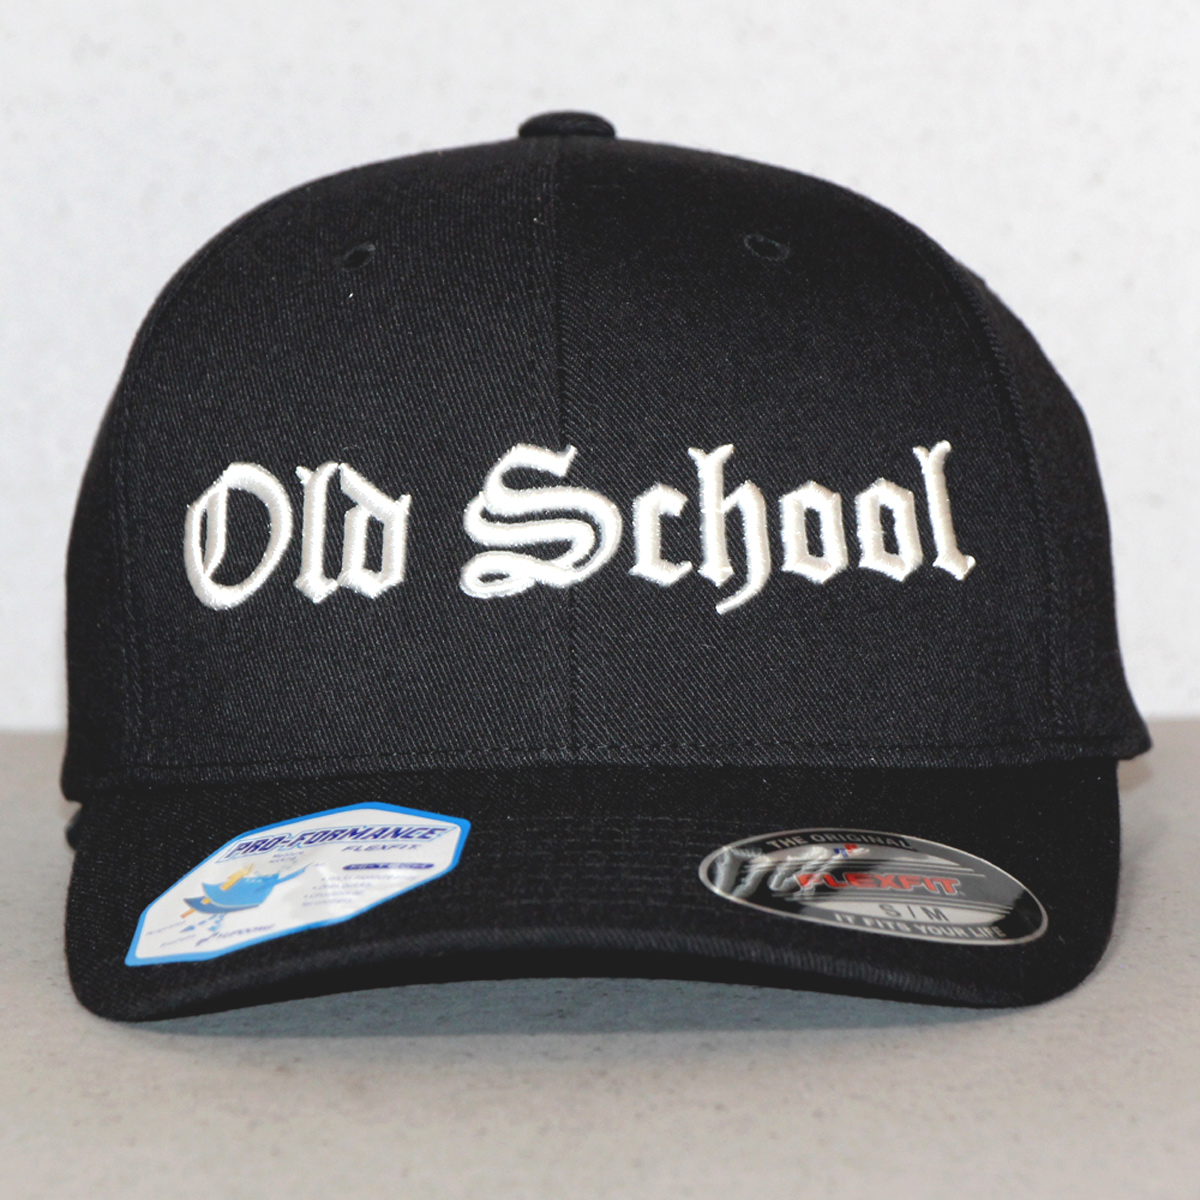 Old School Biker Baseball Hat - Black & White Front